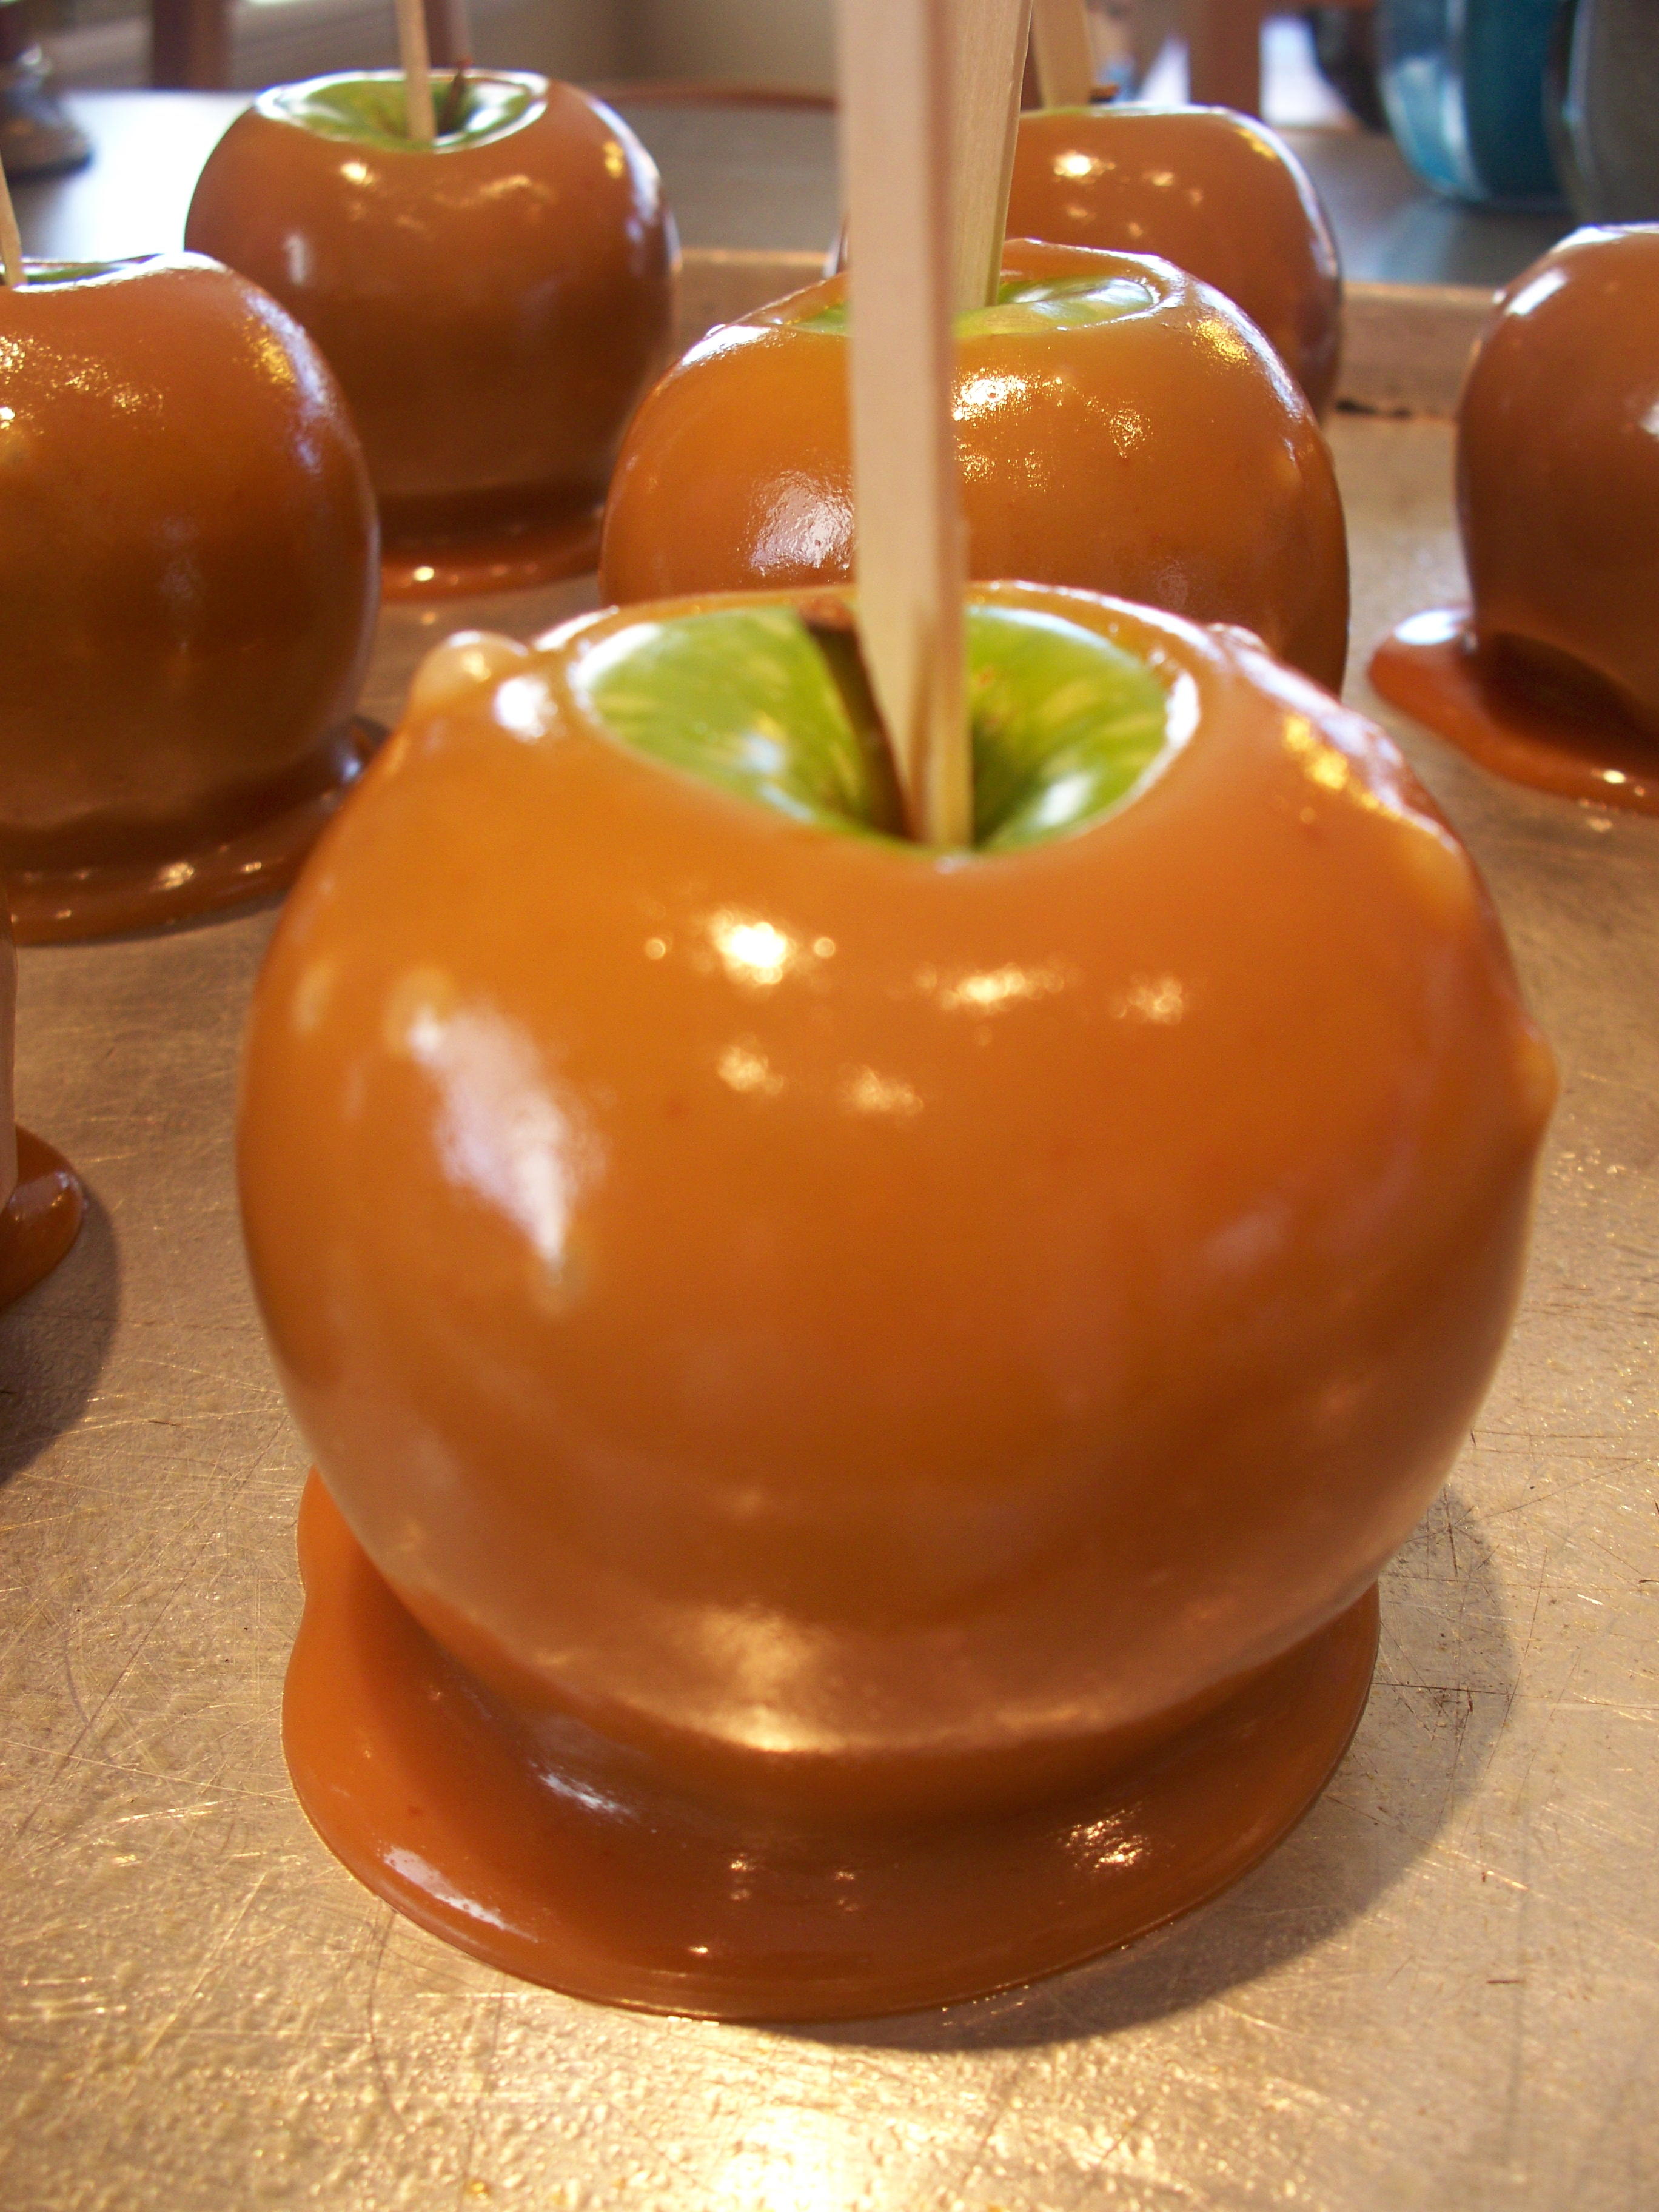 The Best Caramel Apples | RecipeLion.com